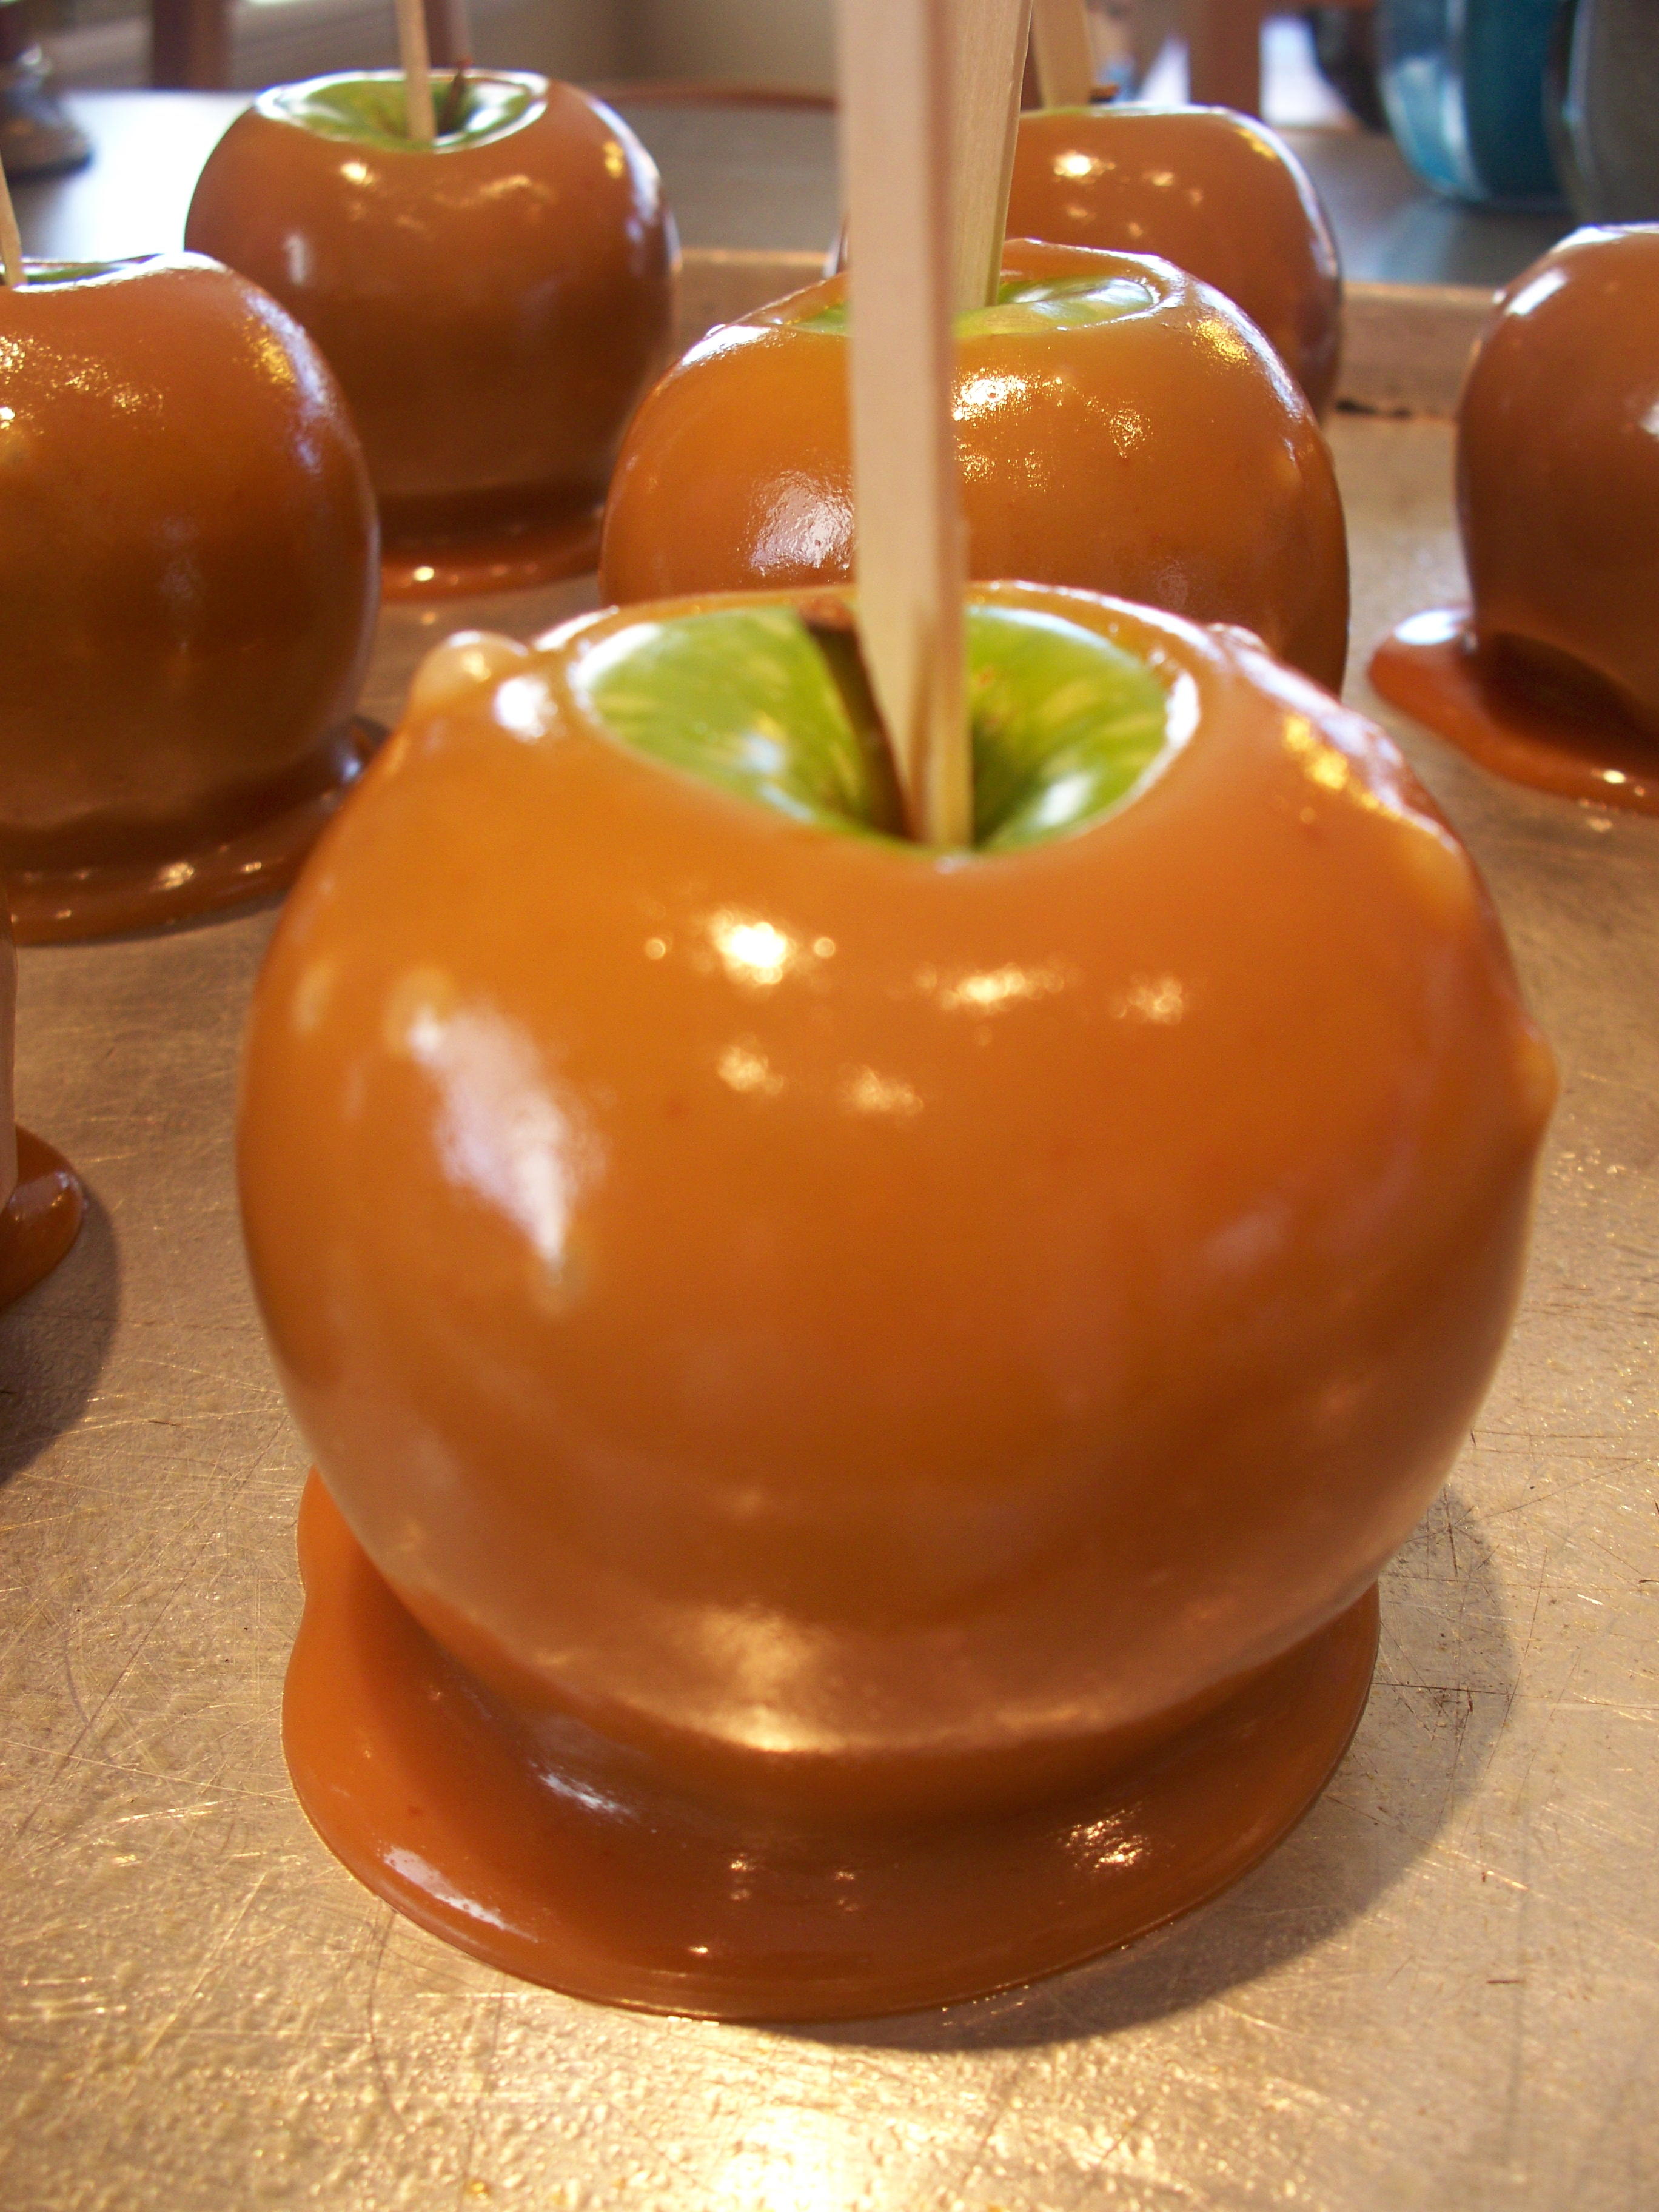 The Best Caramel Apples | RecipeLion.com